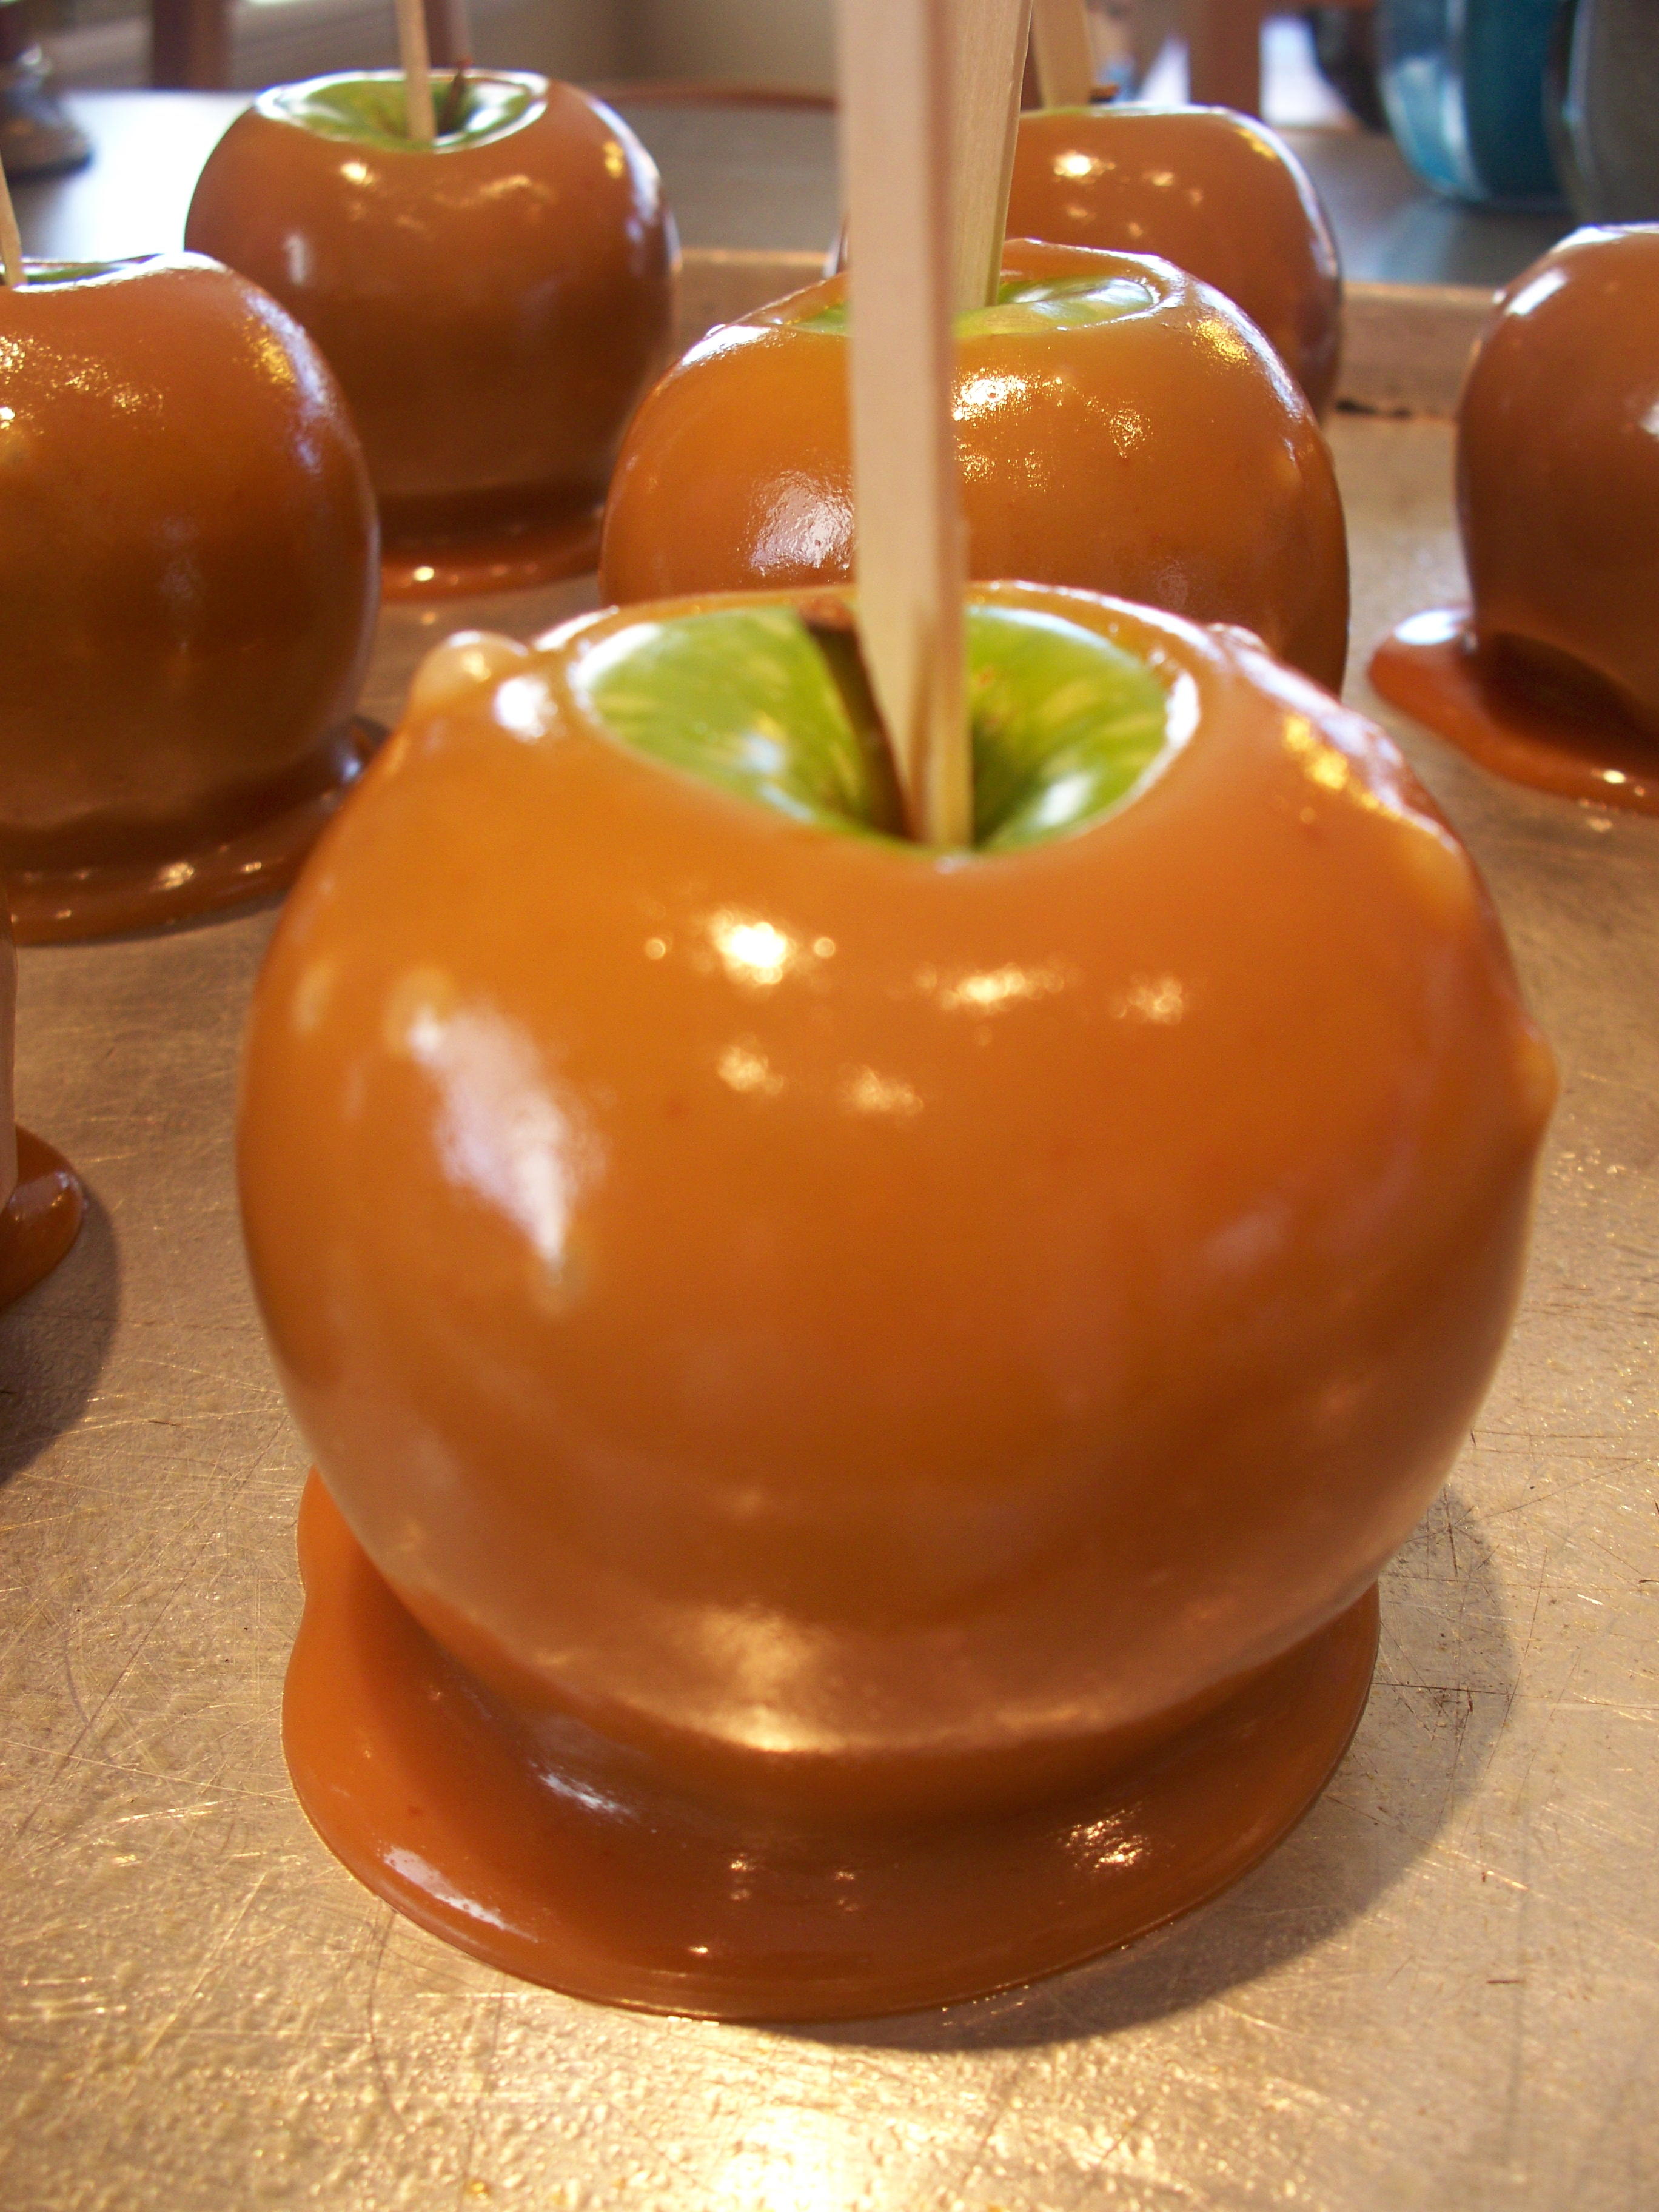 The Best Caramel Apples | RecipeLion.com